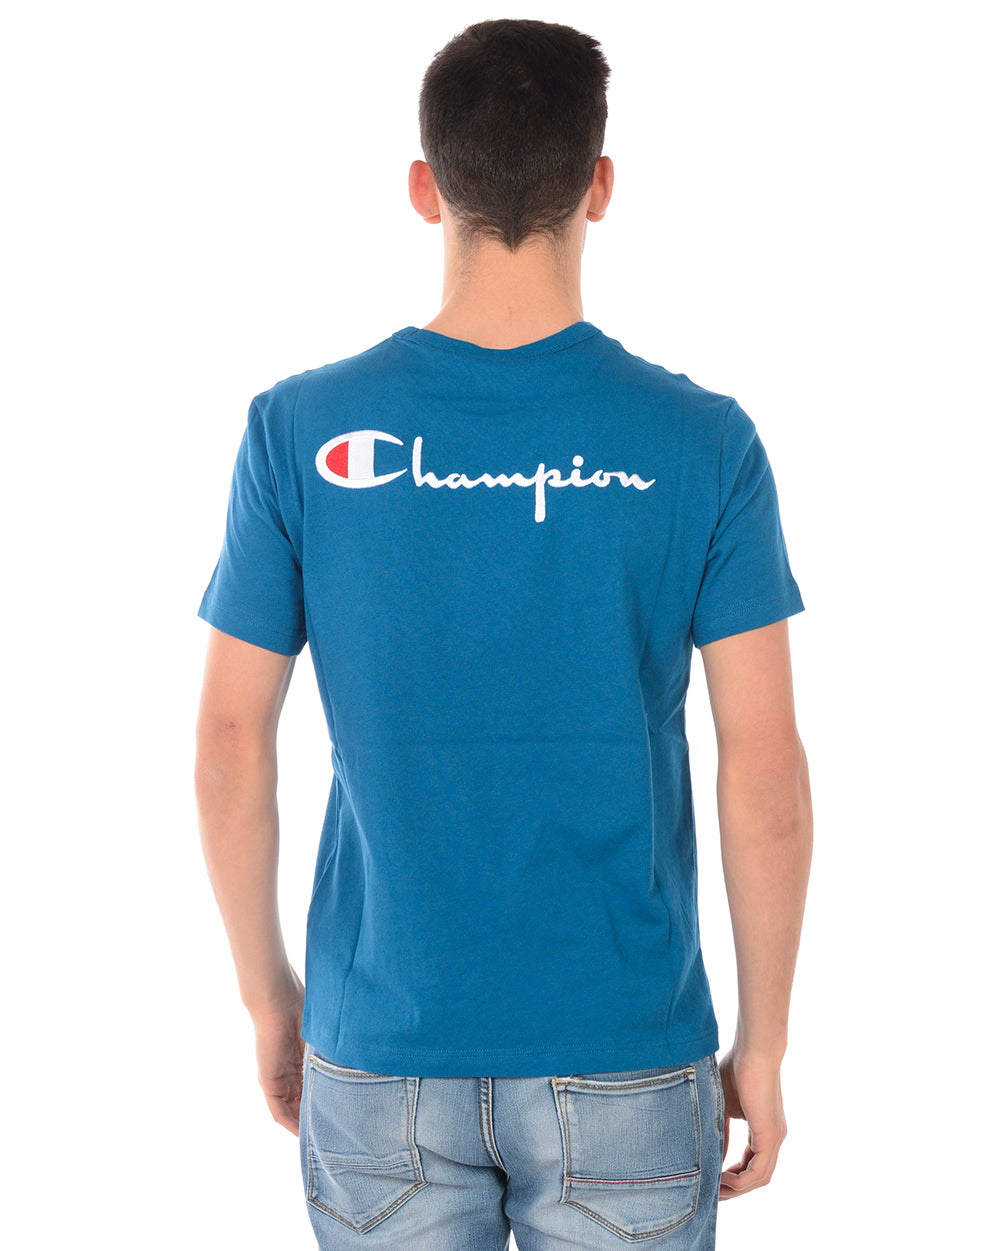 Maglietta Champion M Celeste con Logo Ricamato - mem39